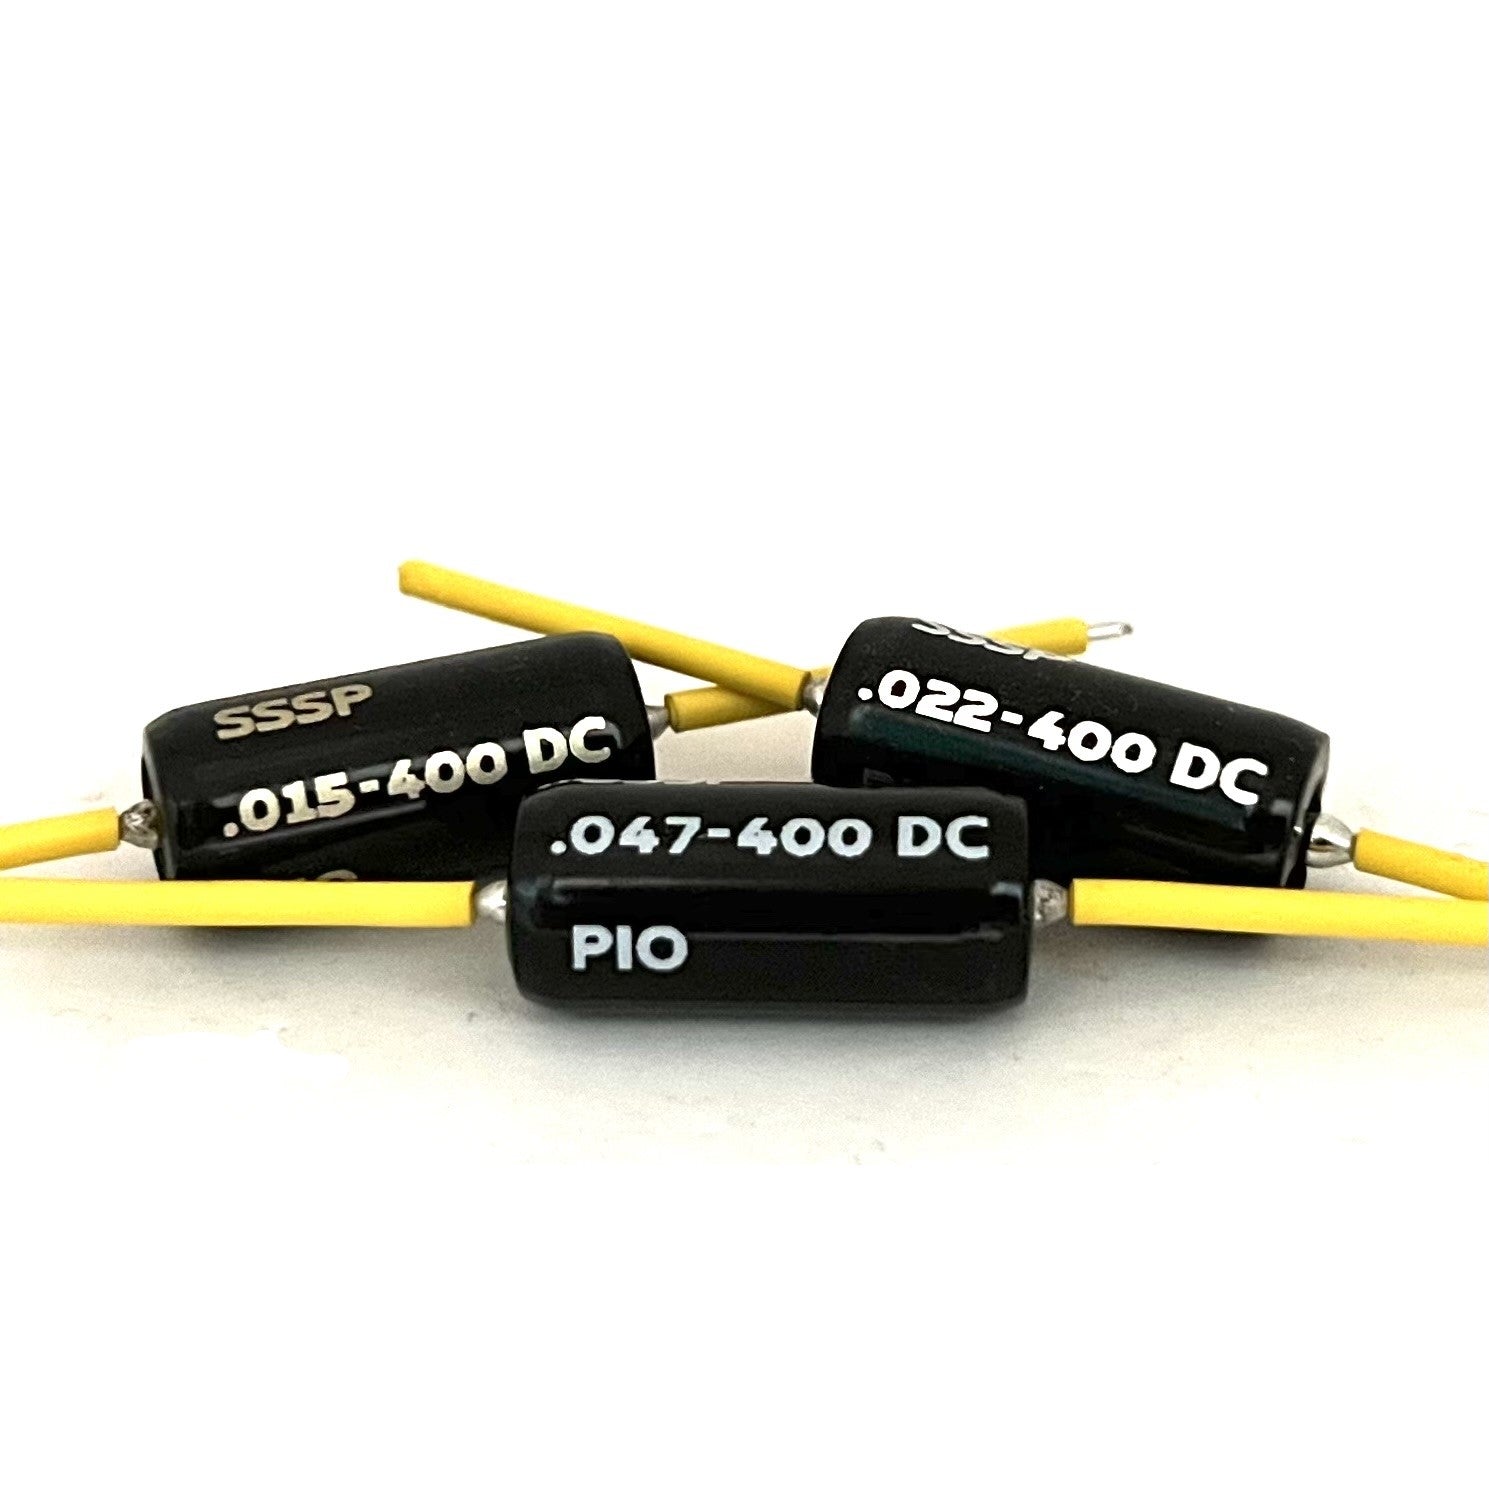 SSS Premium® PIO Capacitors